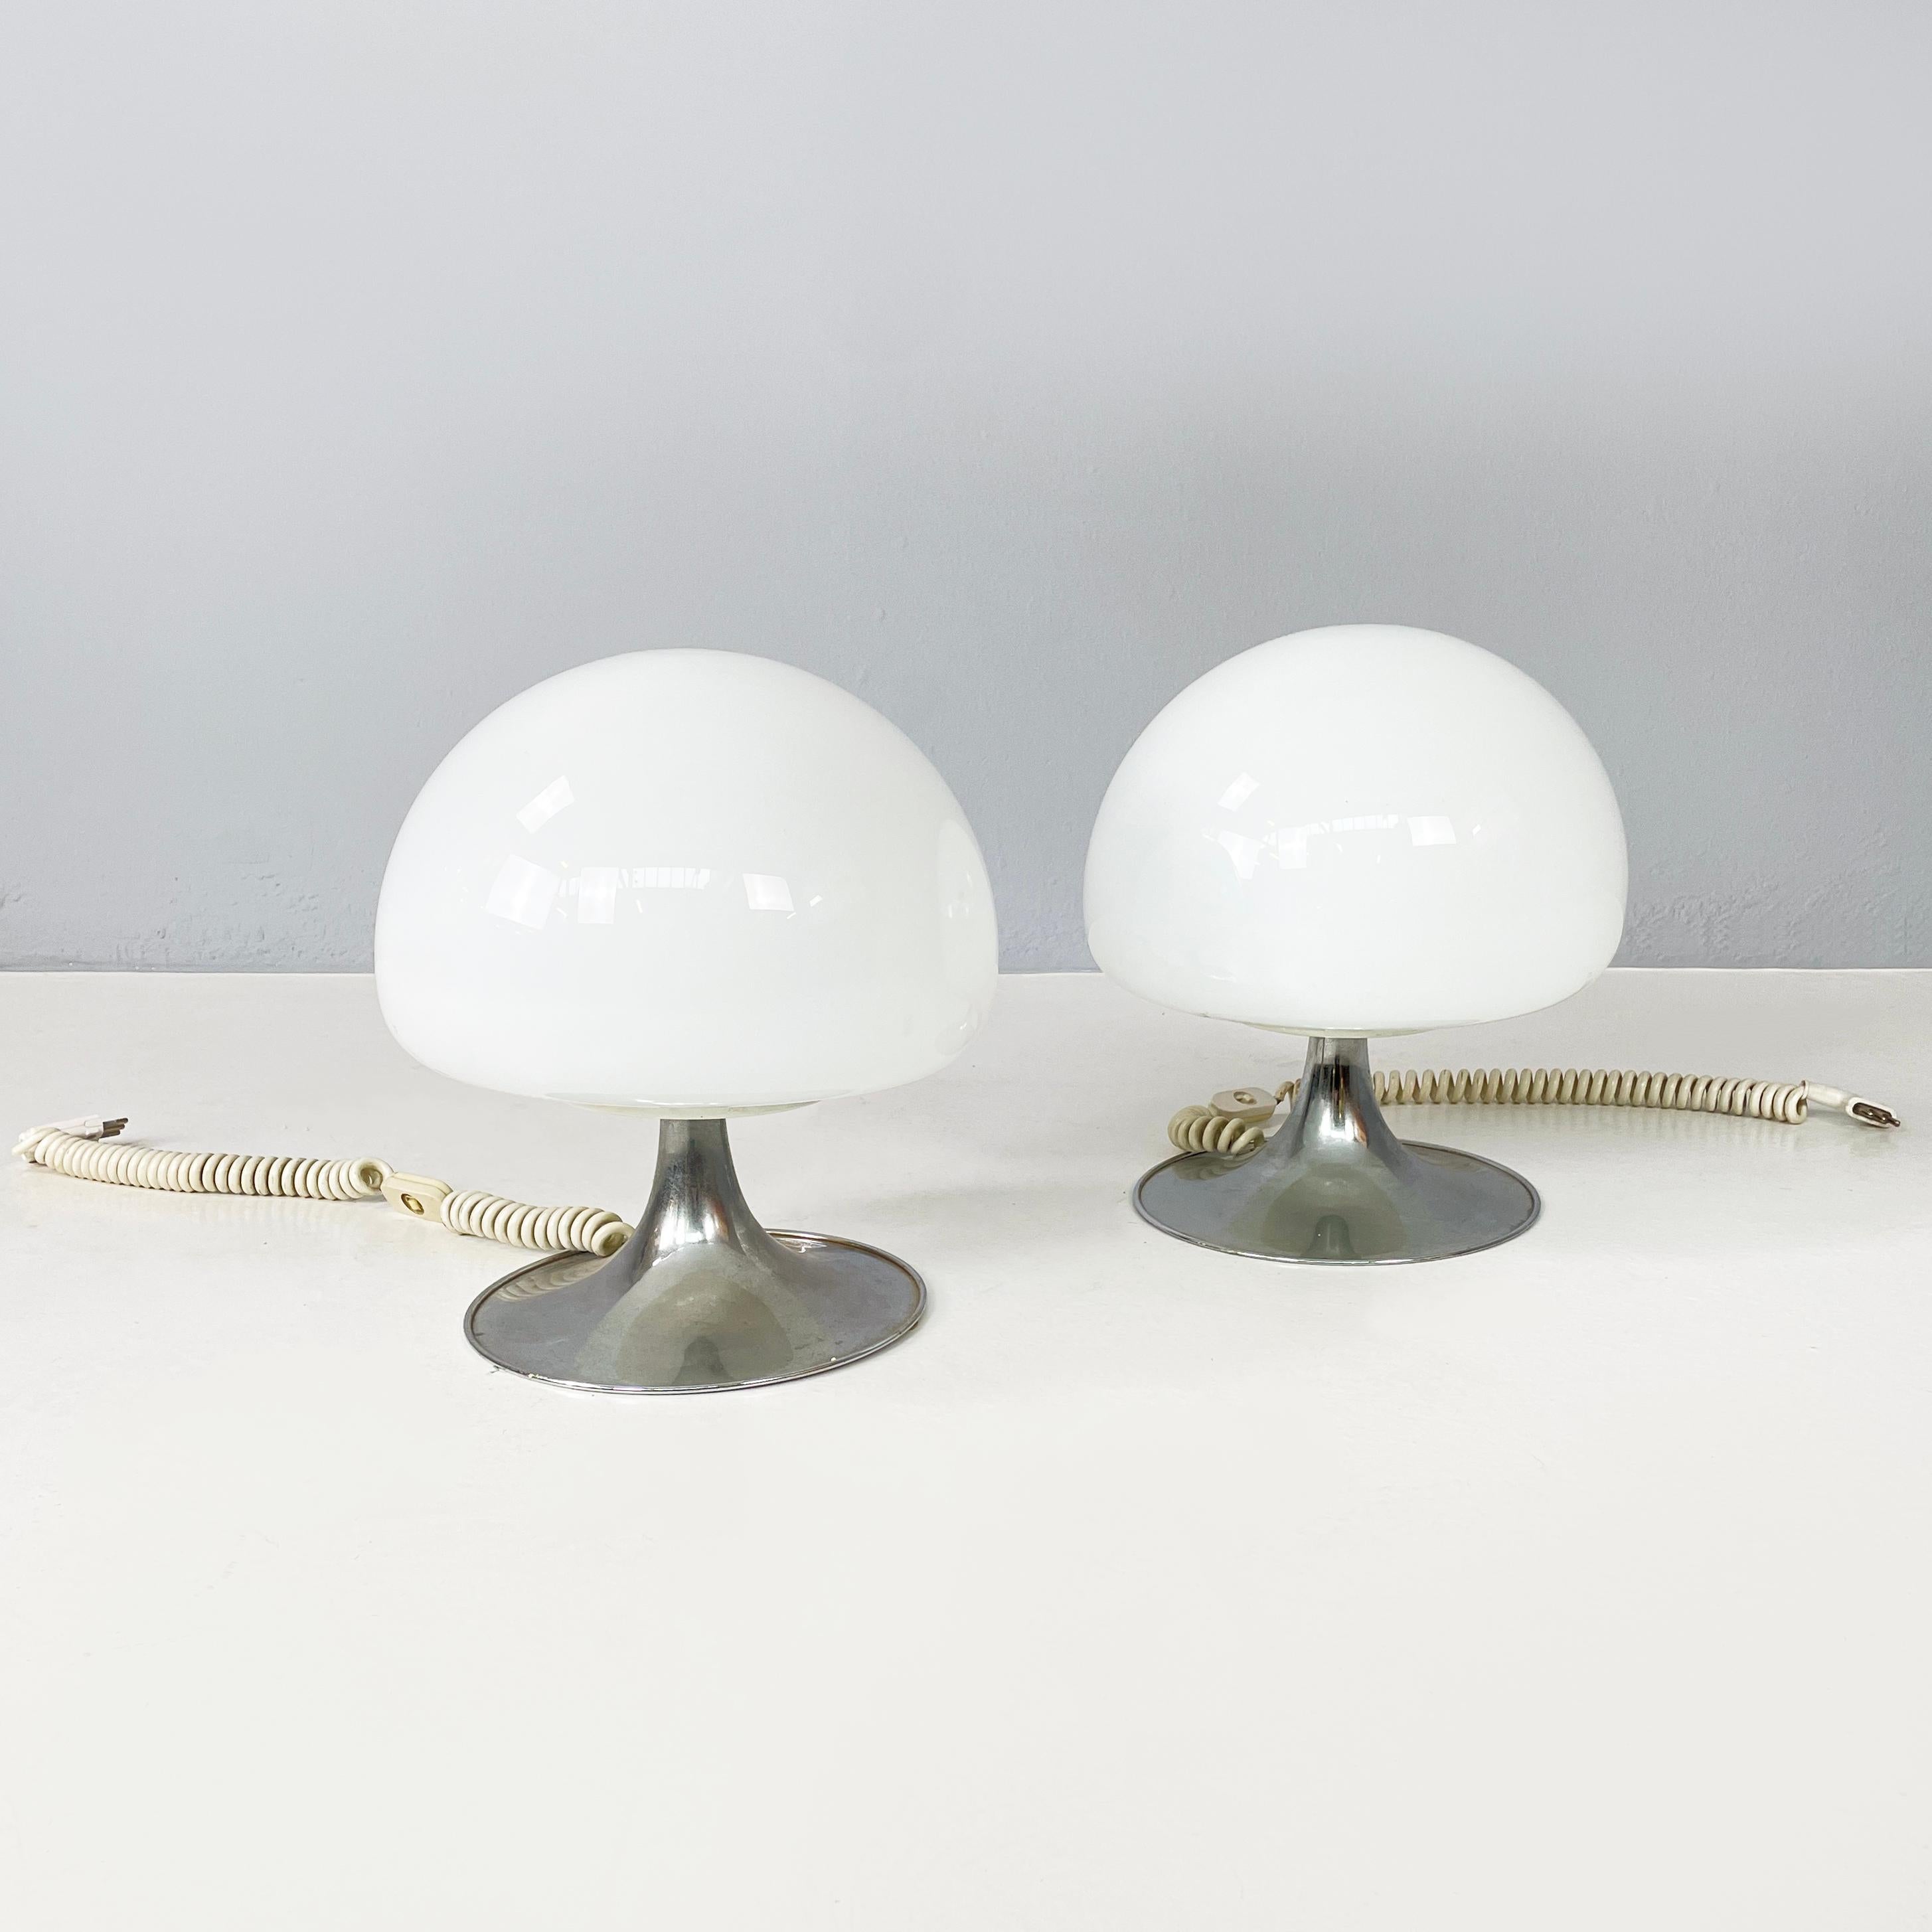 Lampe de table italienne du milieu du siècle dernier Mushroom par Goffredo Reggiani pour Reggiani, 1970
Paire de lampes de table mod. Mushroom avec diffuseur en forme de champignon en verre opale. La base ronde est en acier chromé. Ces lampes sont